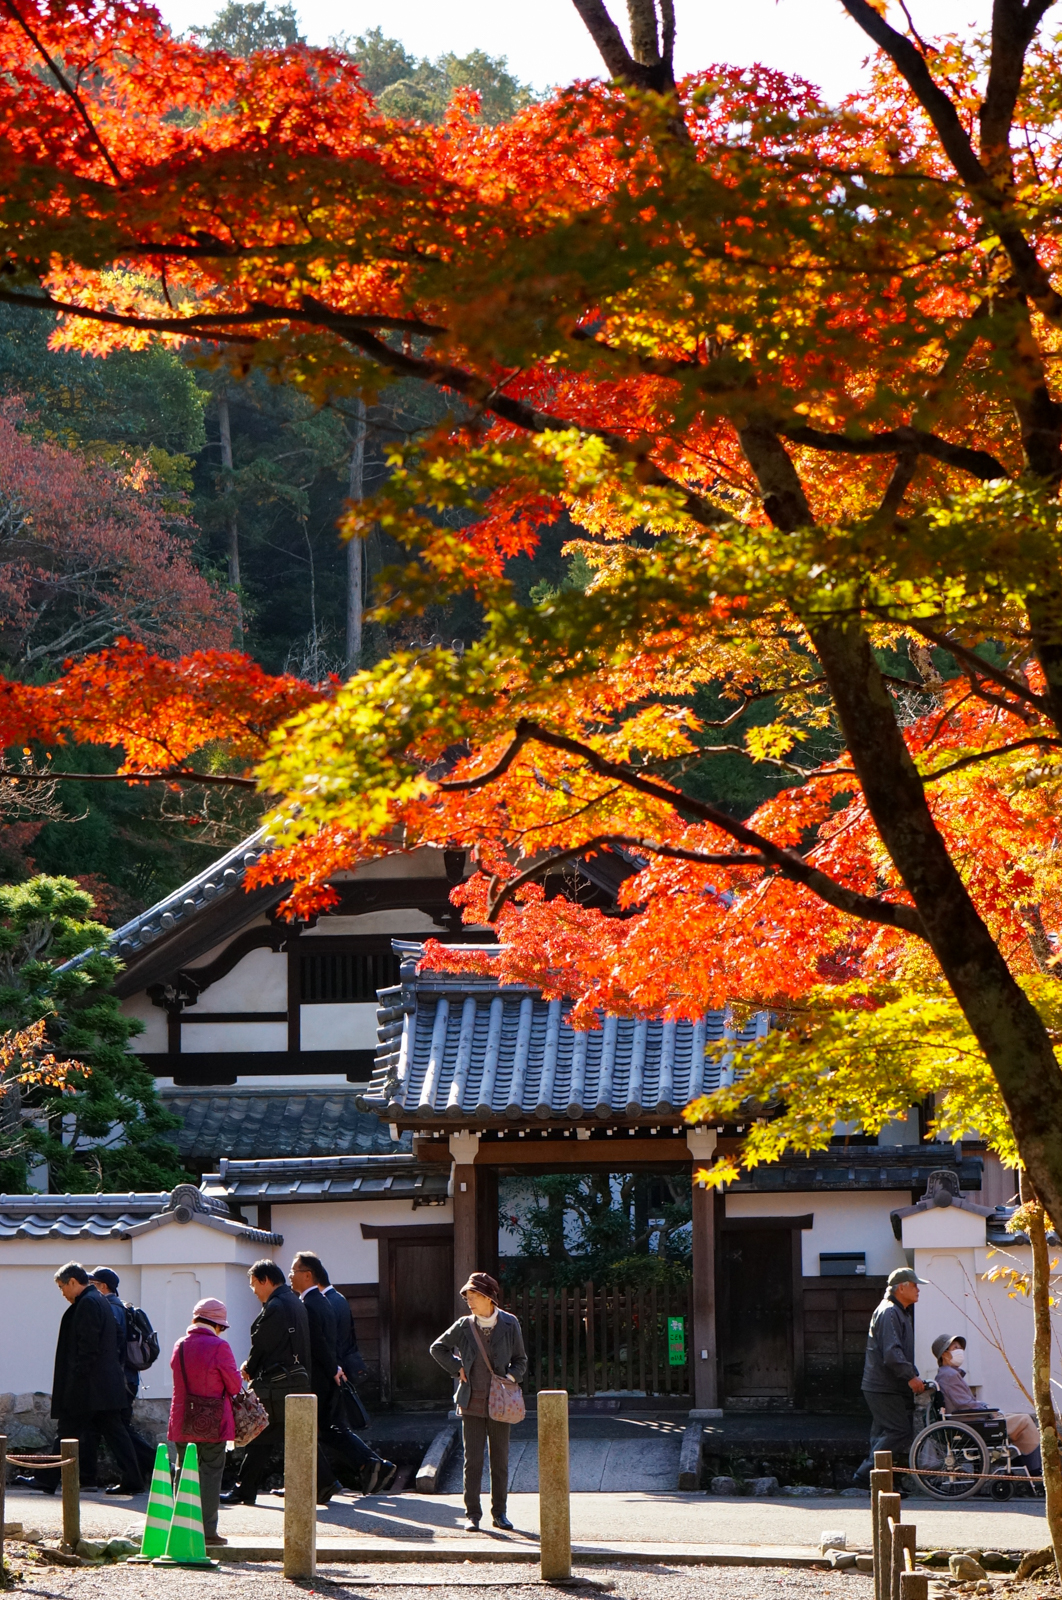 kyoto, kyoto chemin de la philosophie, kyoto momiji, automne kyoto, balade kyoto, séjour kyoto, voyage kyoto, érables kyoto, jardins kyoto, nanzen-ji, nanzen-ji kyoto